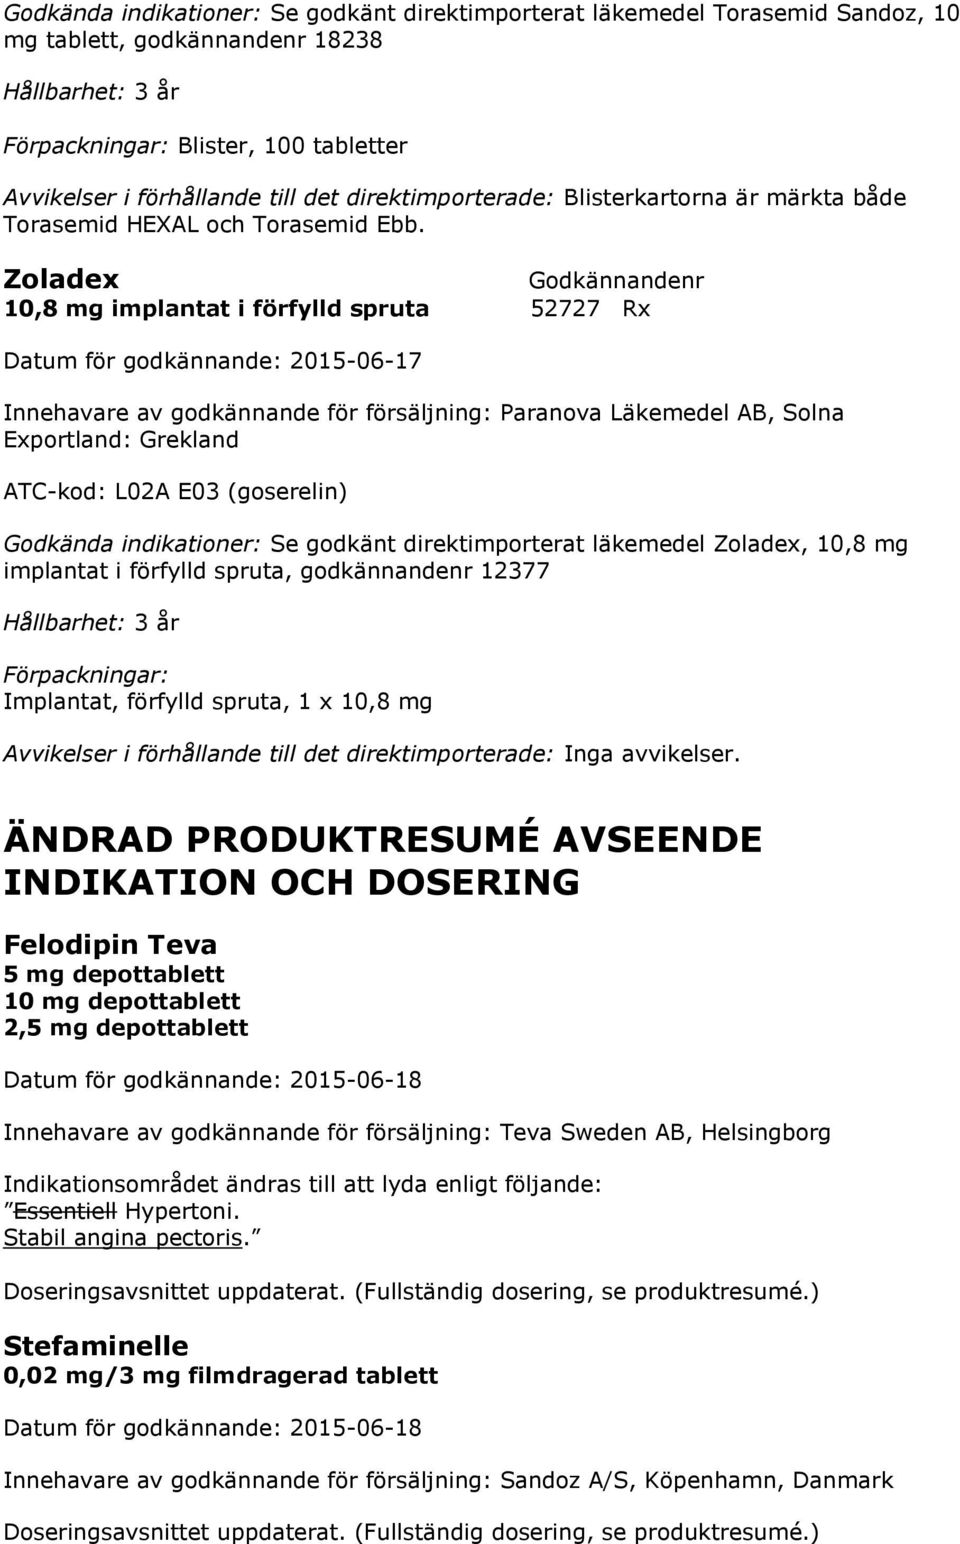 Zoladex 10,8 mg implantat i förfylld spruta 52727 Rx Innehavare av godkännande för försäljning: Paranova Läkemedel AB, Solna Exportland: Grekland ATC-kod: L02A E03 (goserelin) Godkända indikationer: